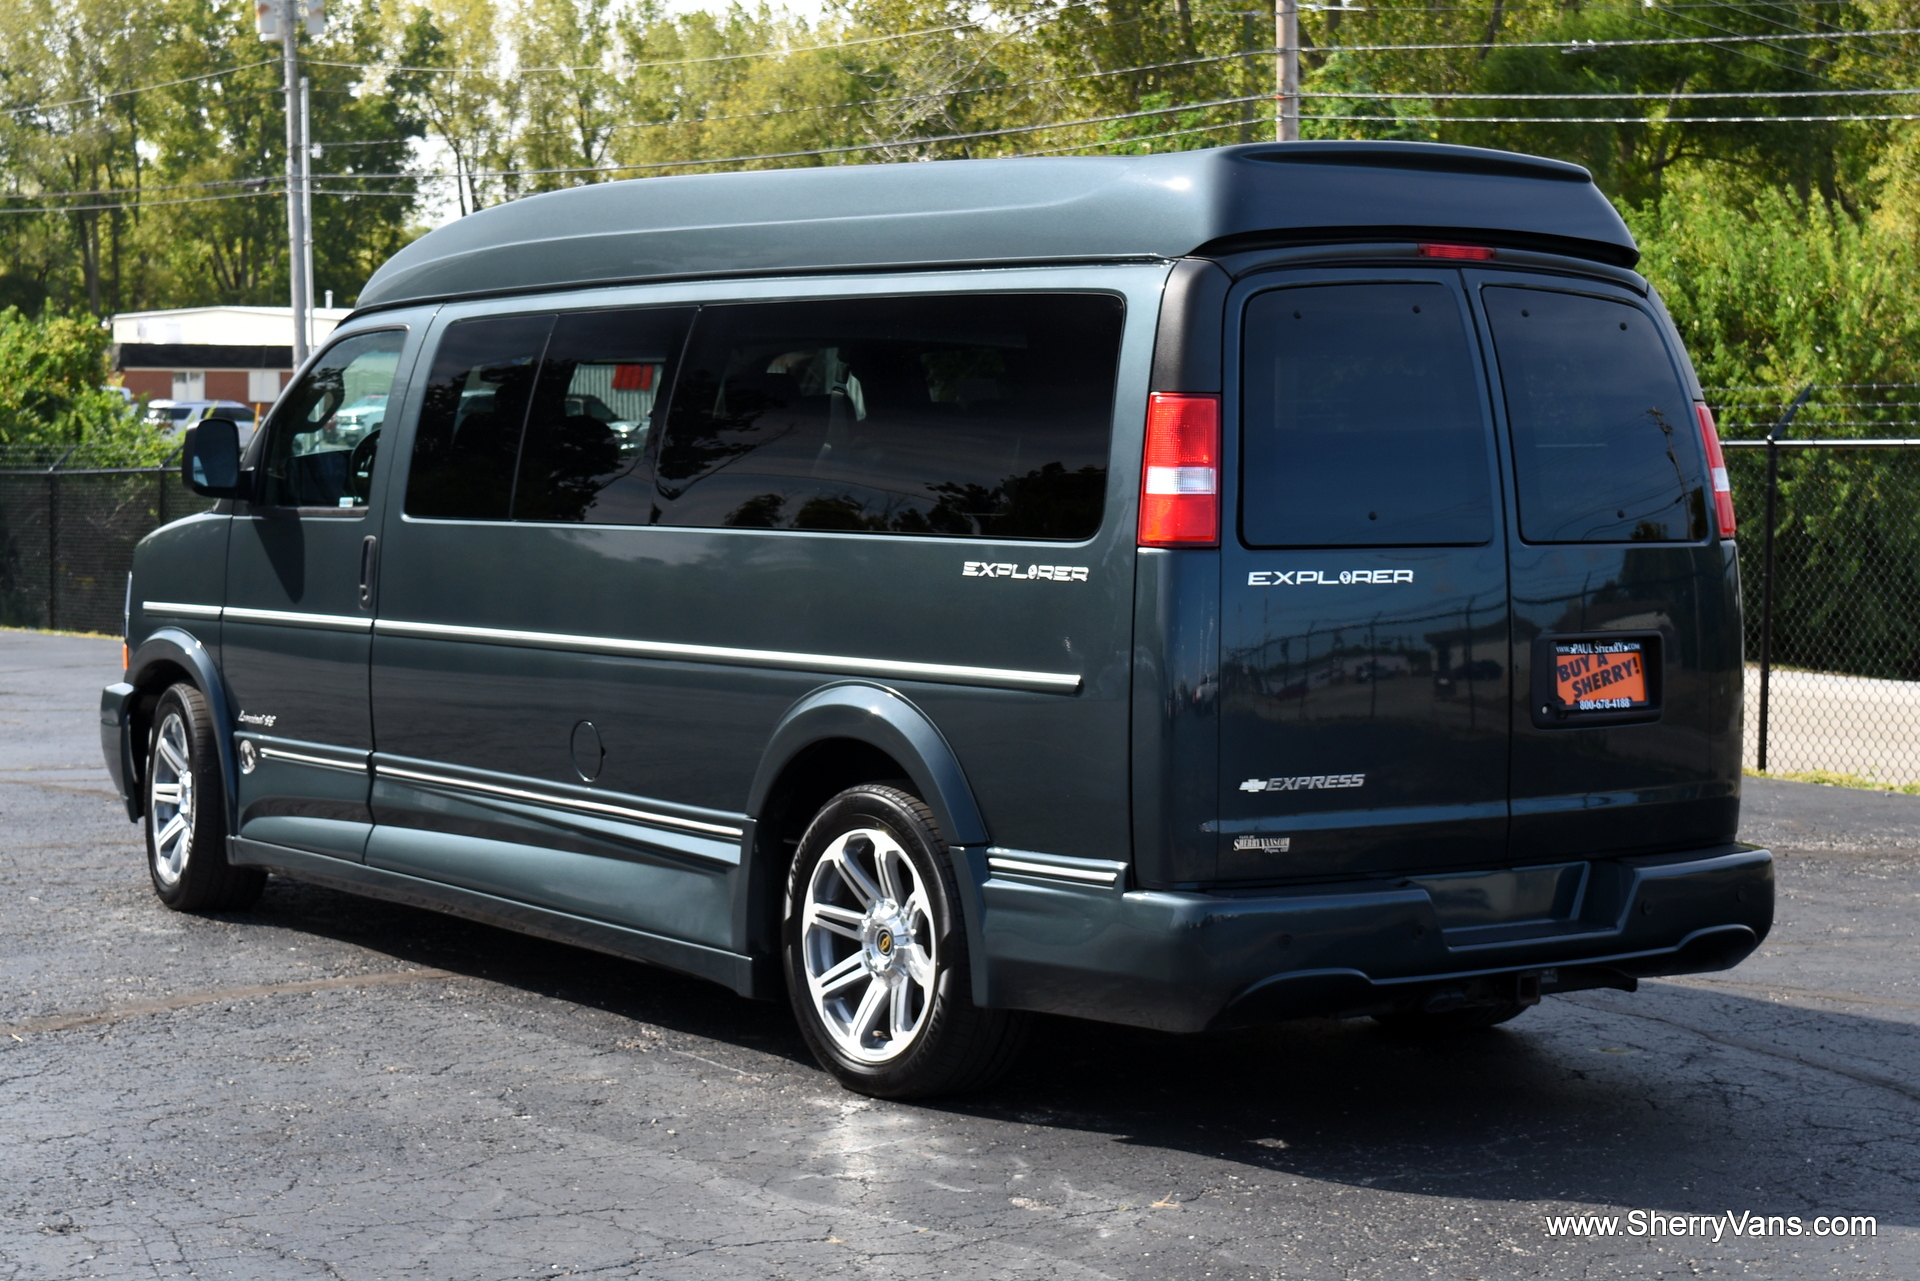 9 Passenger Conversion Van For Sale - dReferenz Blog